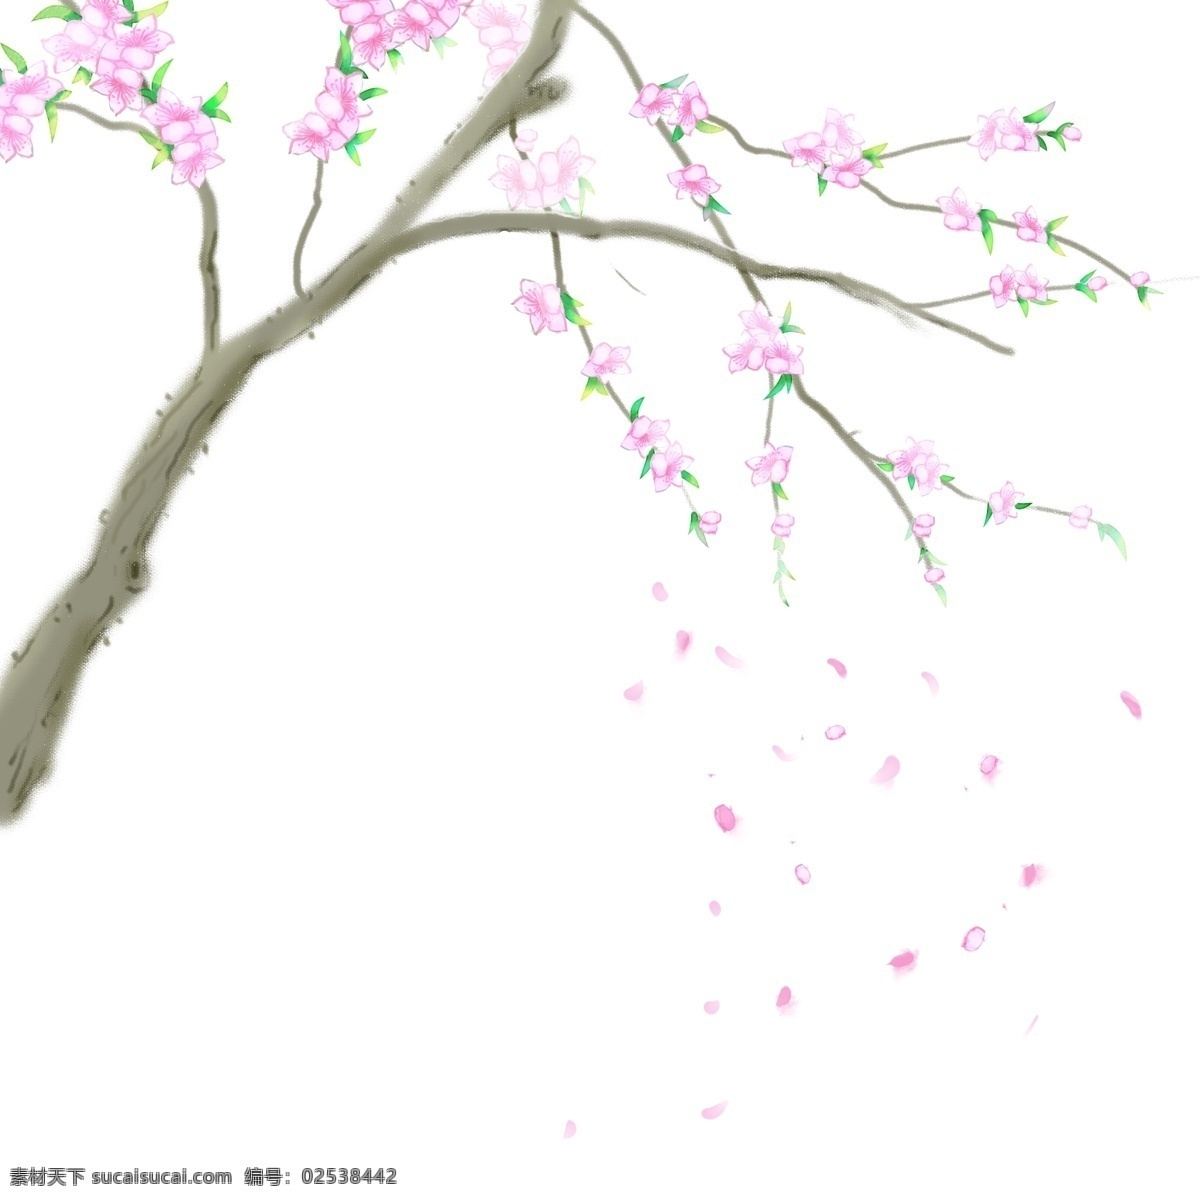 卡通 手绘 中国 风 桃花 卡通手绘 中国风 水彩 水墨 唯美 小清新 桃花树 桃花树枝 盛开 粉色 飘落 花瓣